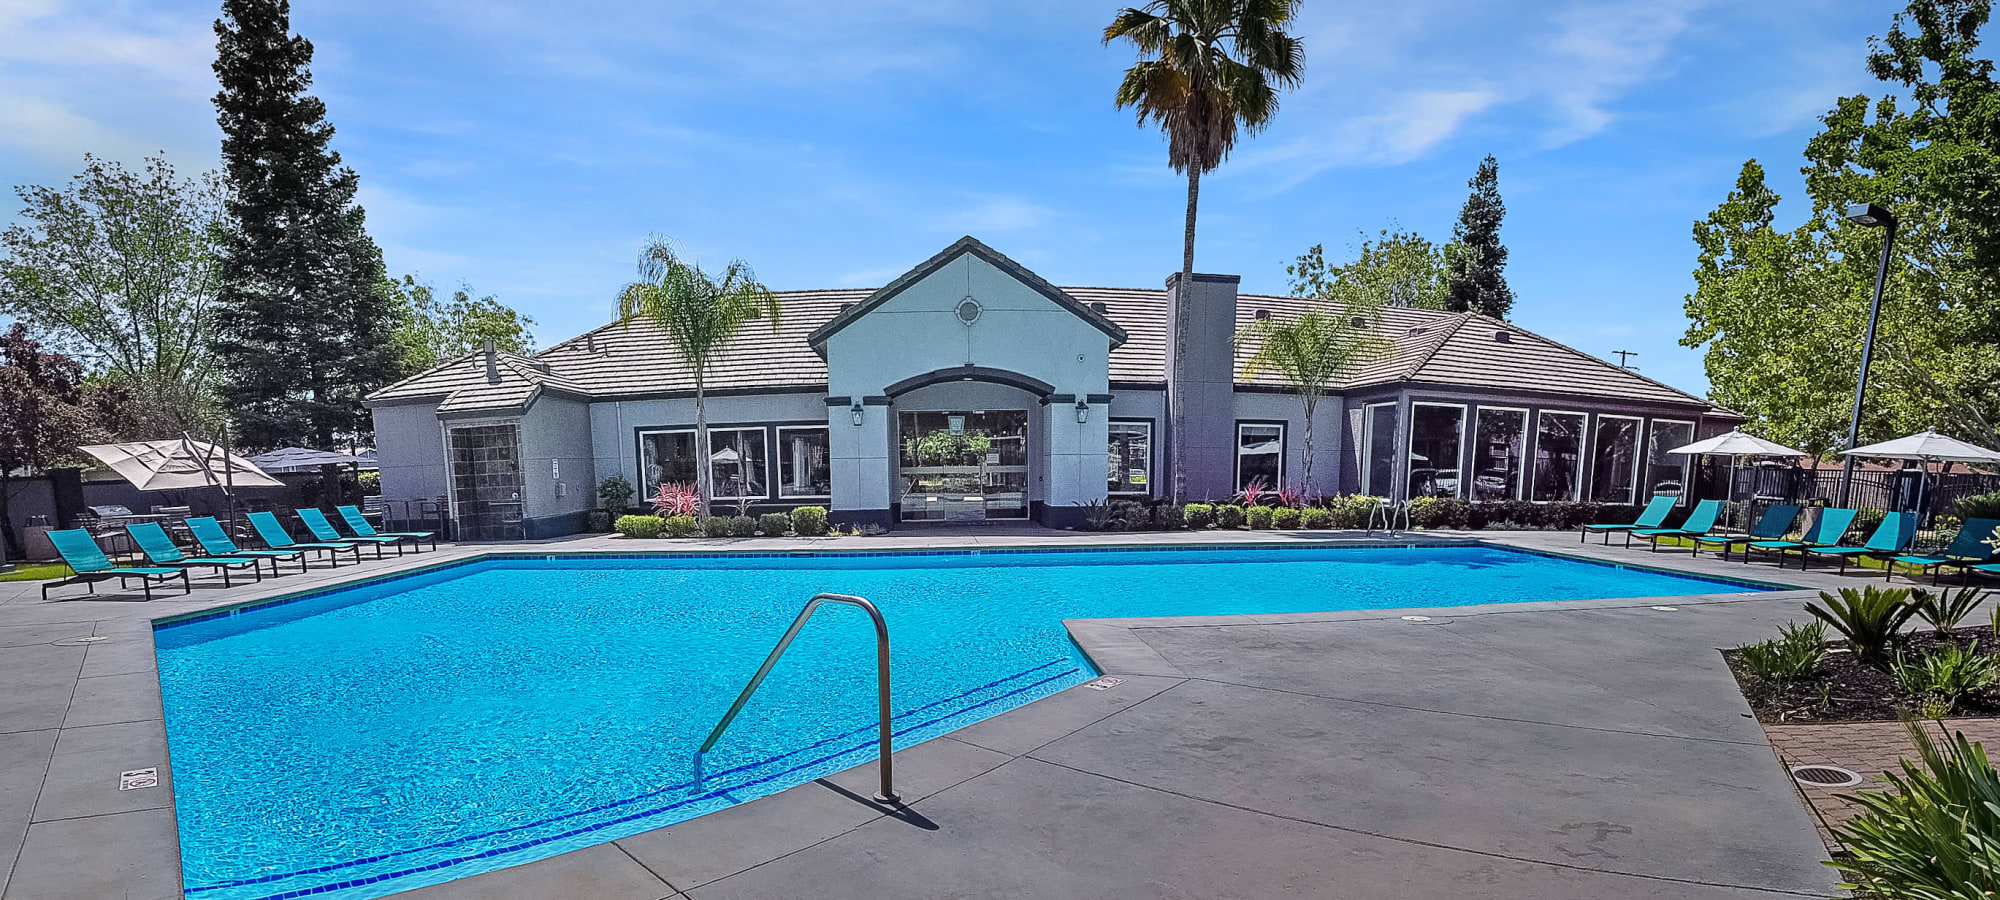 Swimming pool at Avion Apartments in Rancho Cordova, California